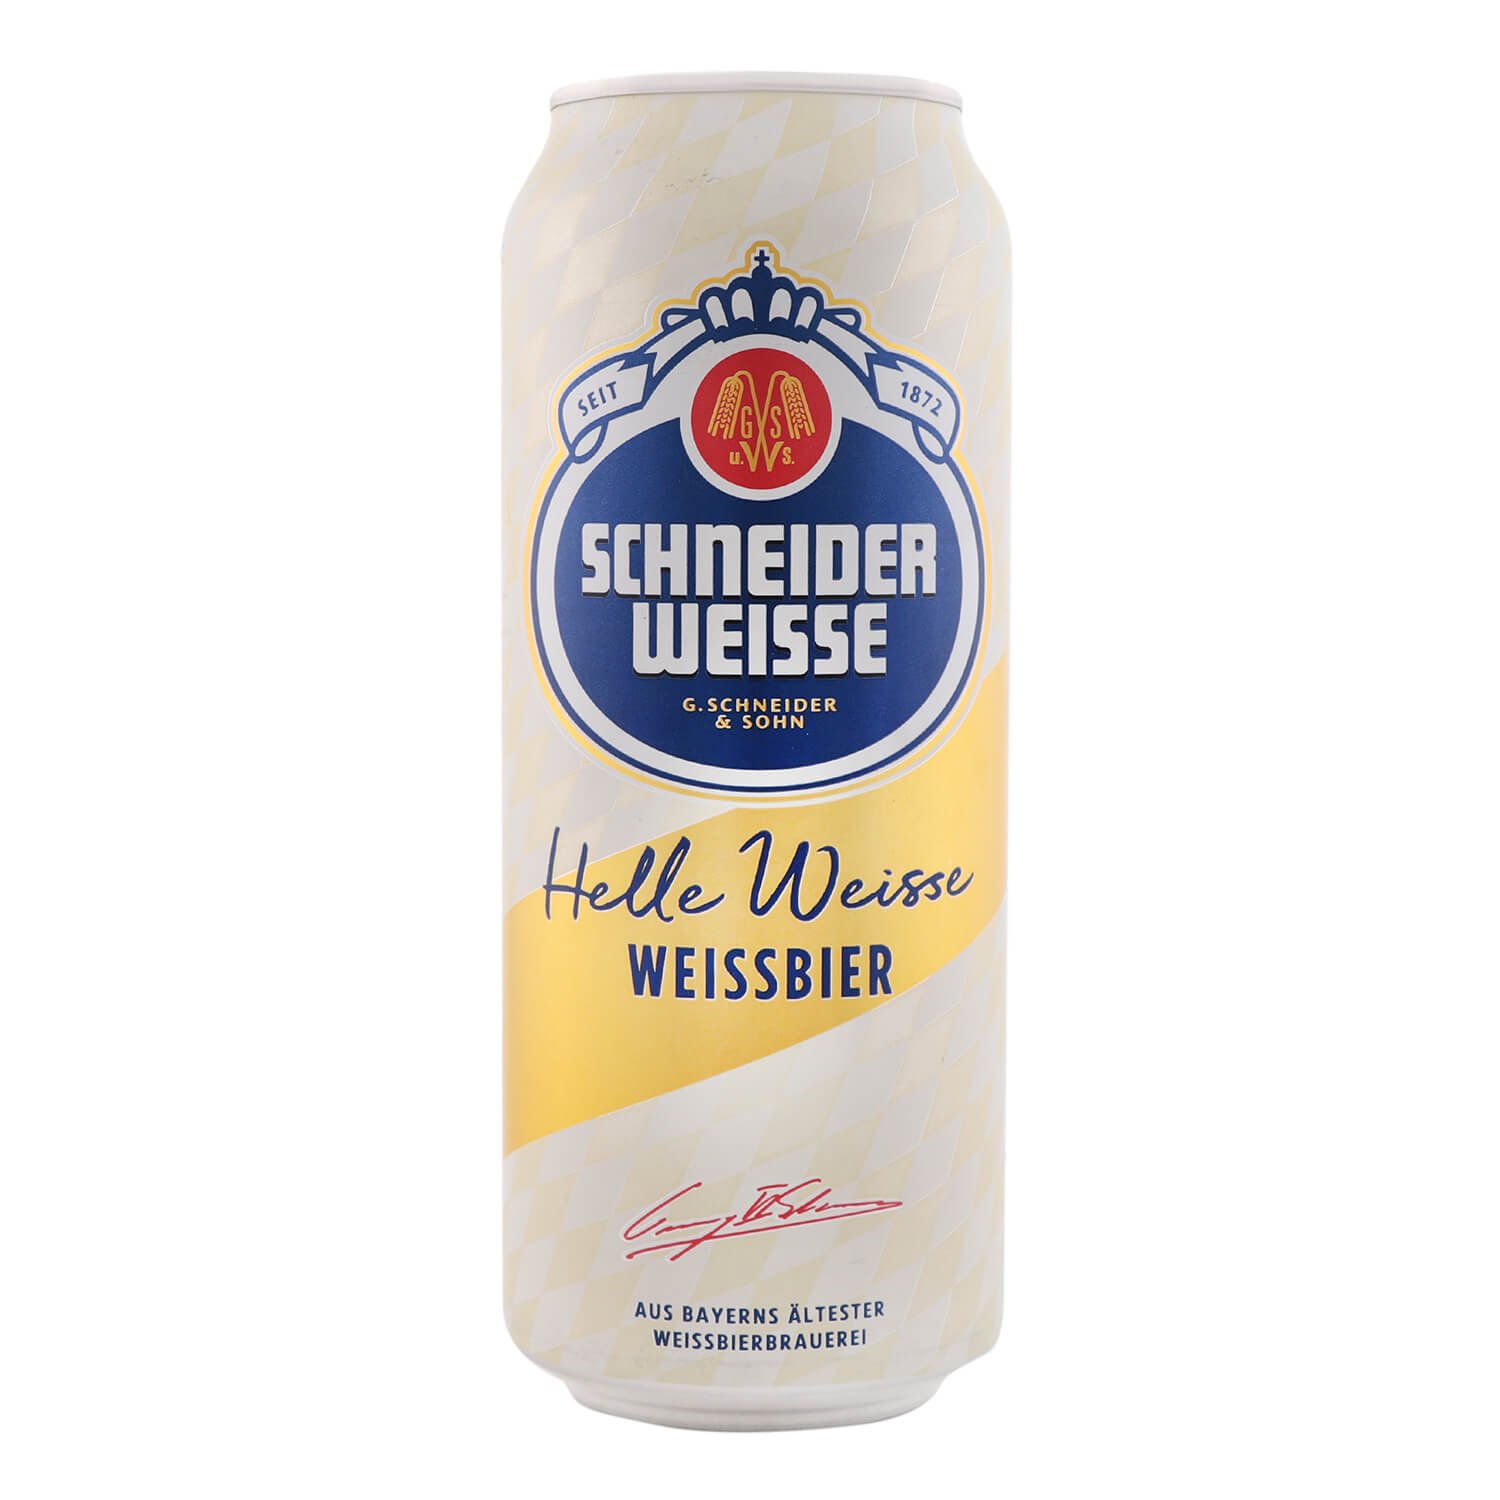 Пиво Schneider Weisse Helle Weisse TAP01, светлое, 5%, ж/б, 0,5 л (830452) - фото 1